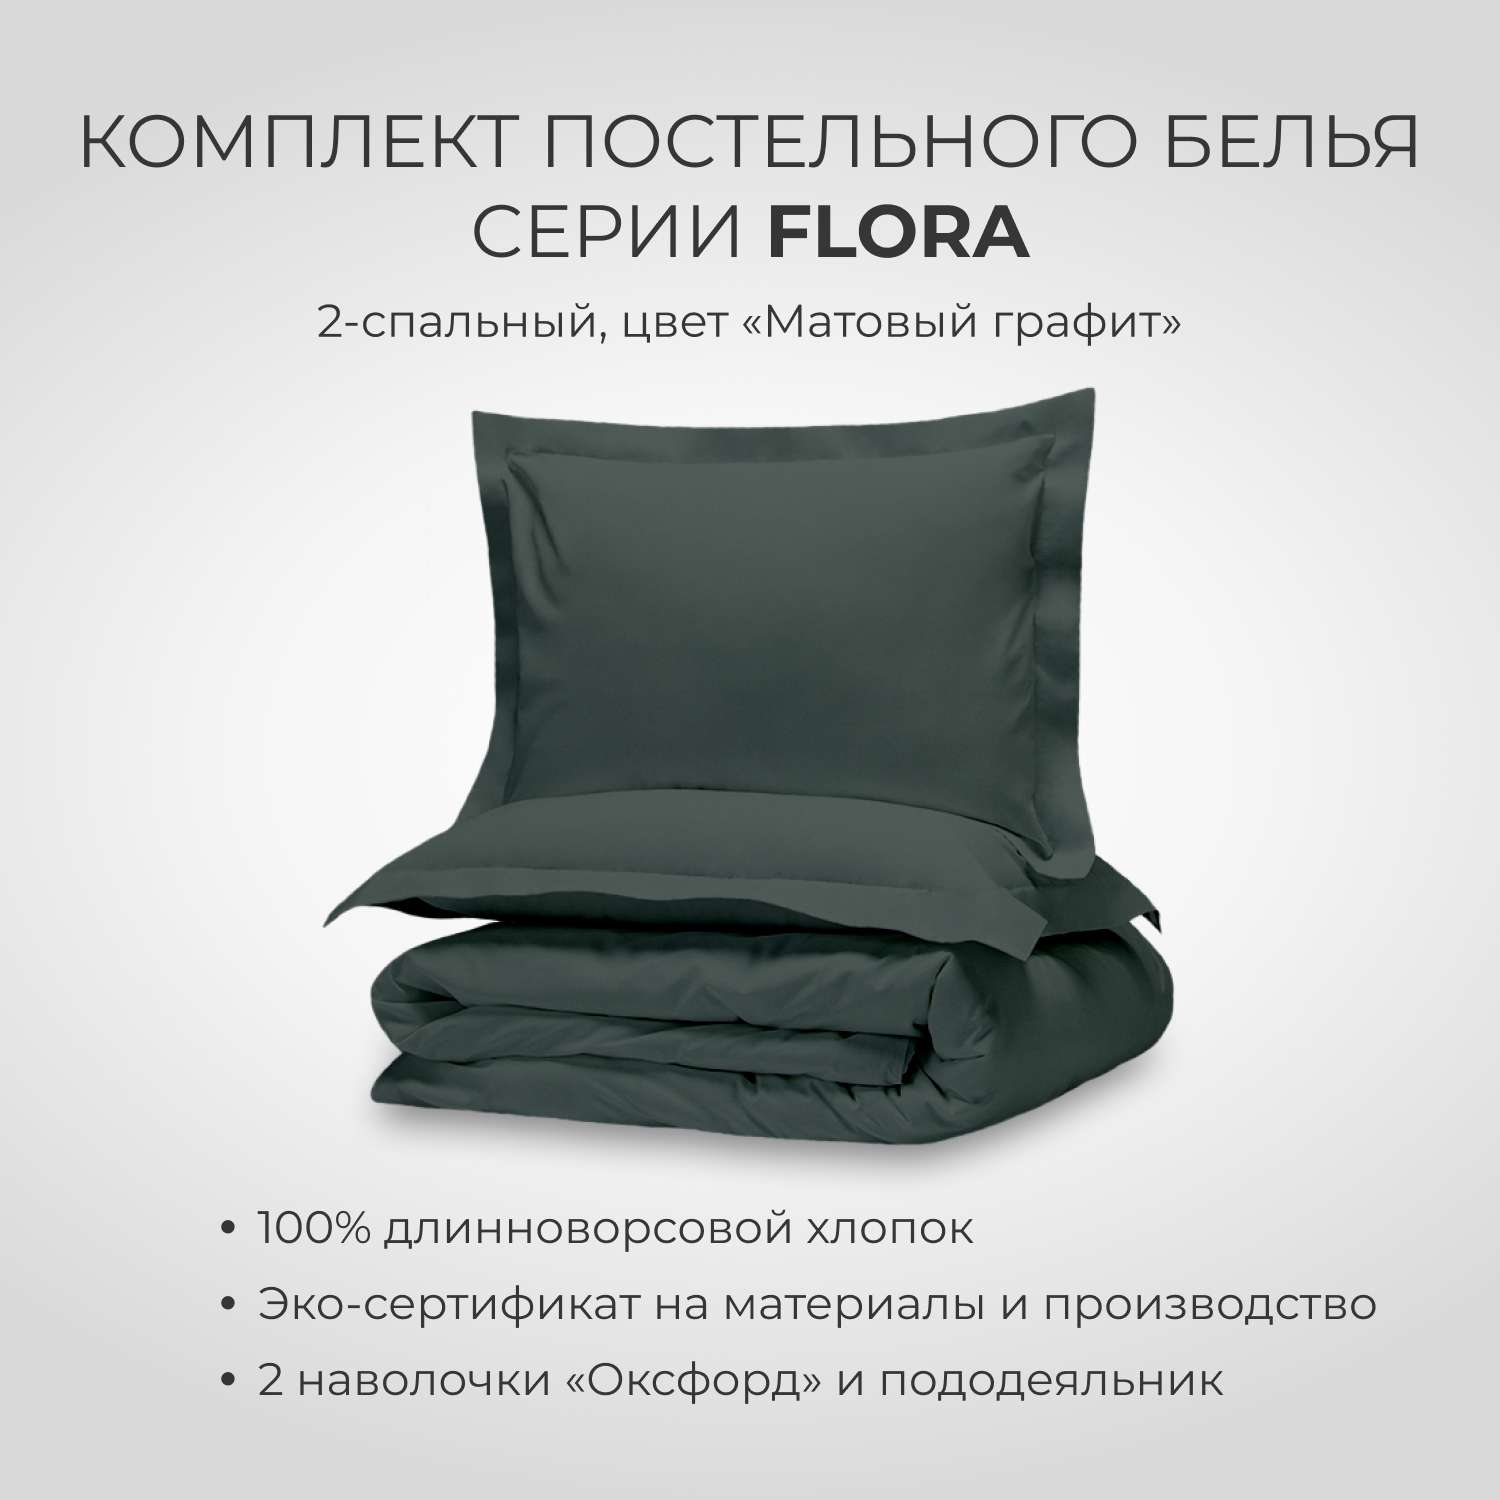 Комплект постельного белья SONNO FLORA 2-спальный цвет Матовый графит - фото 1